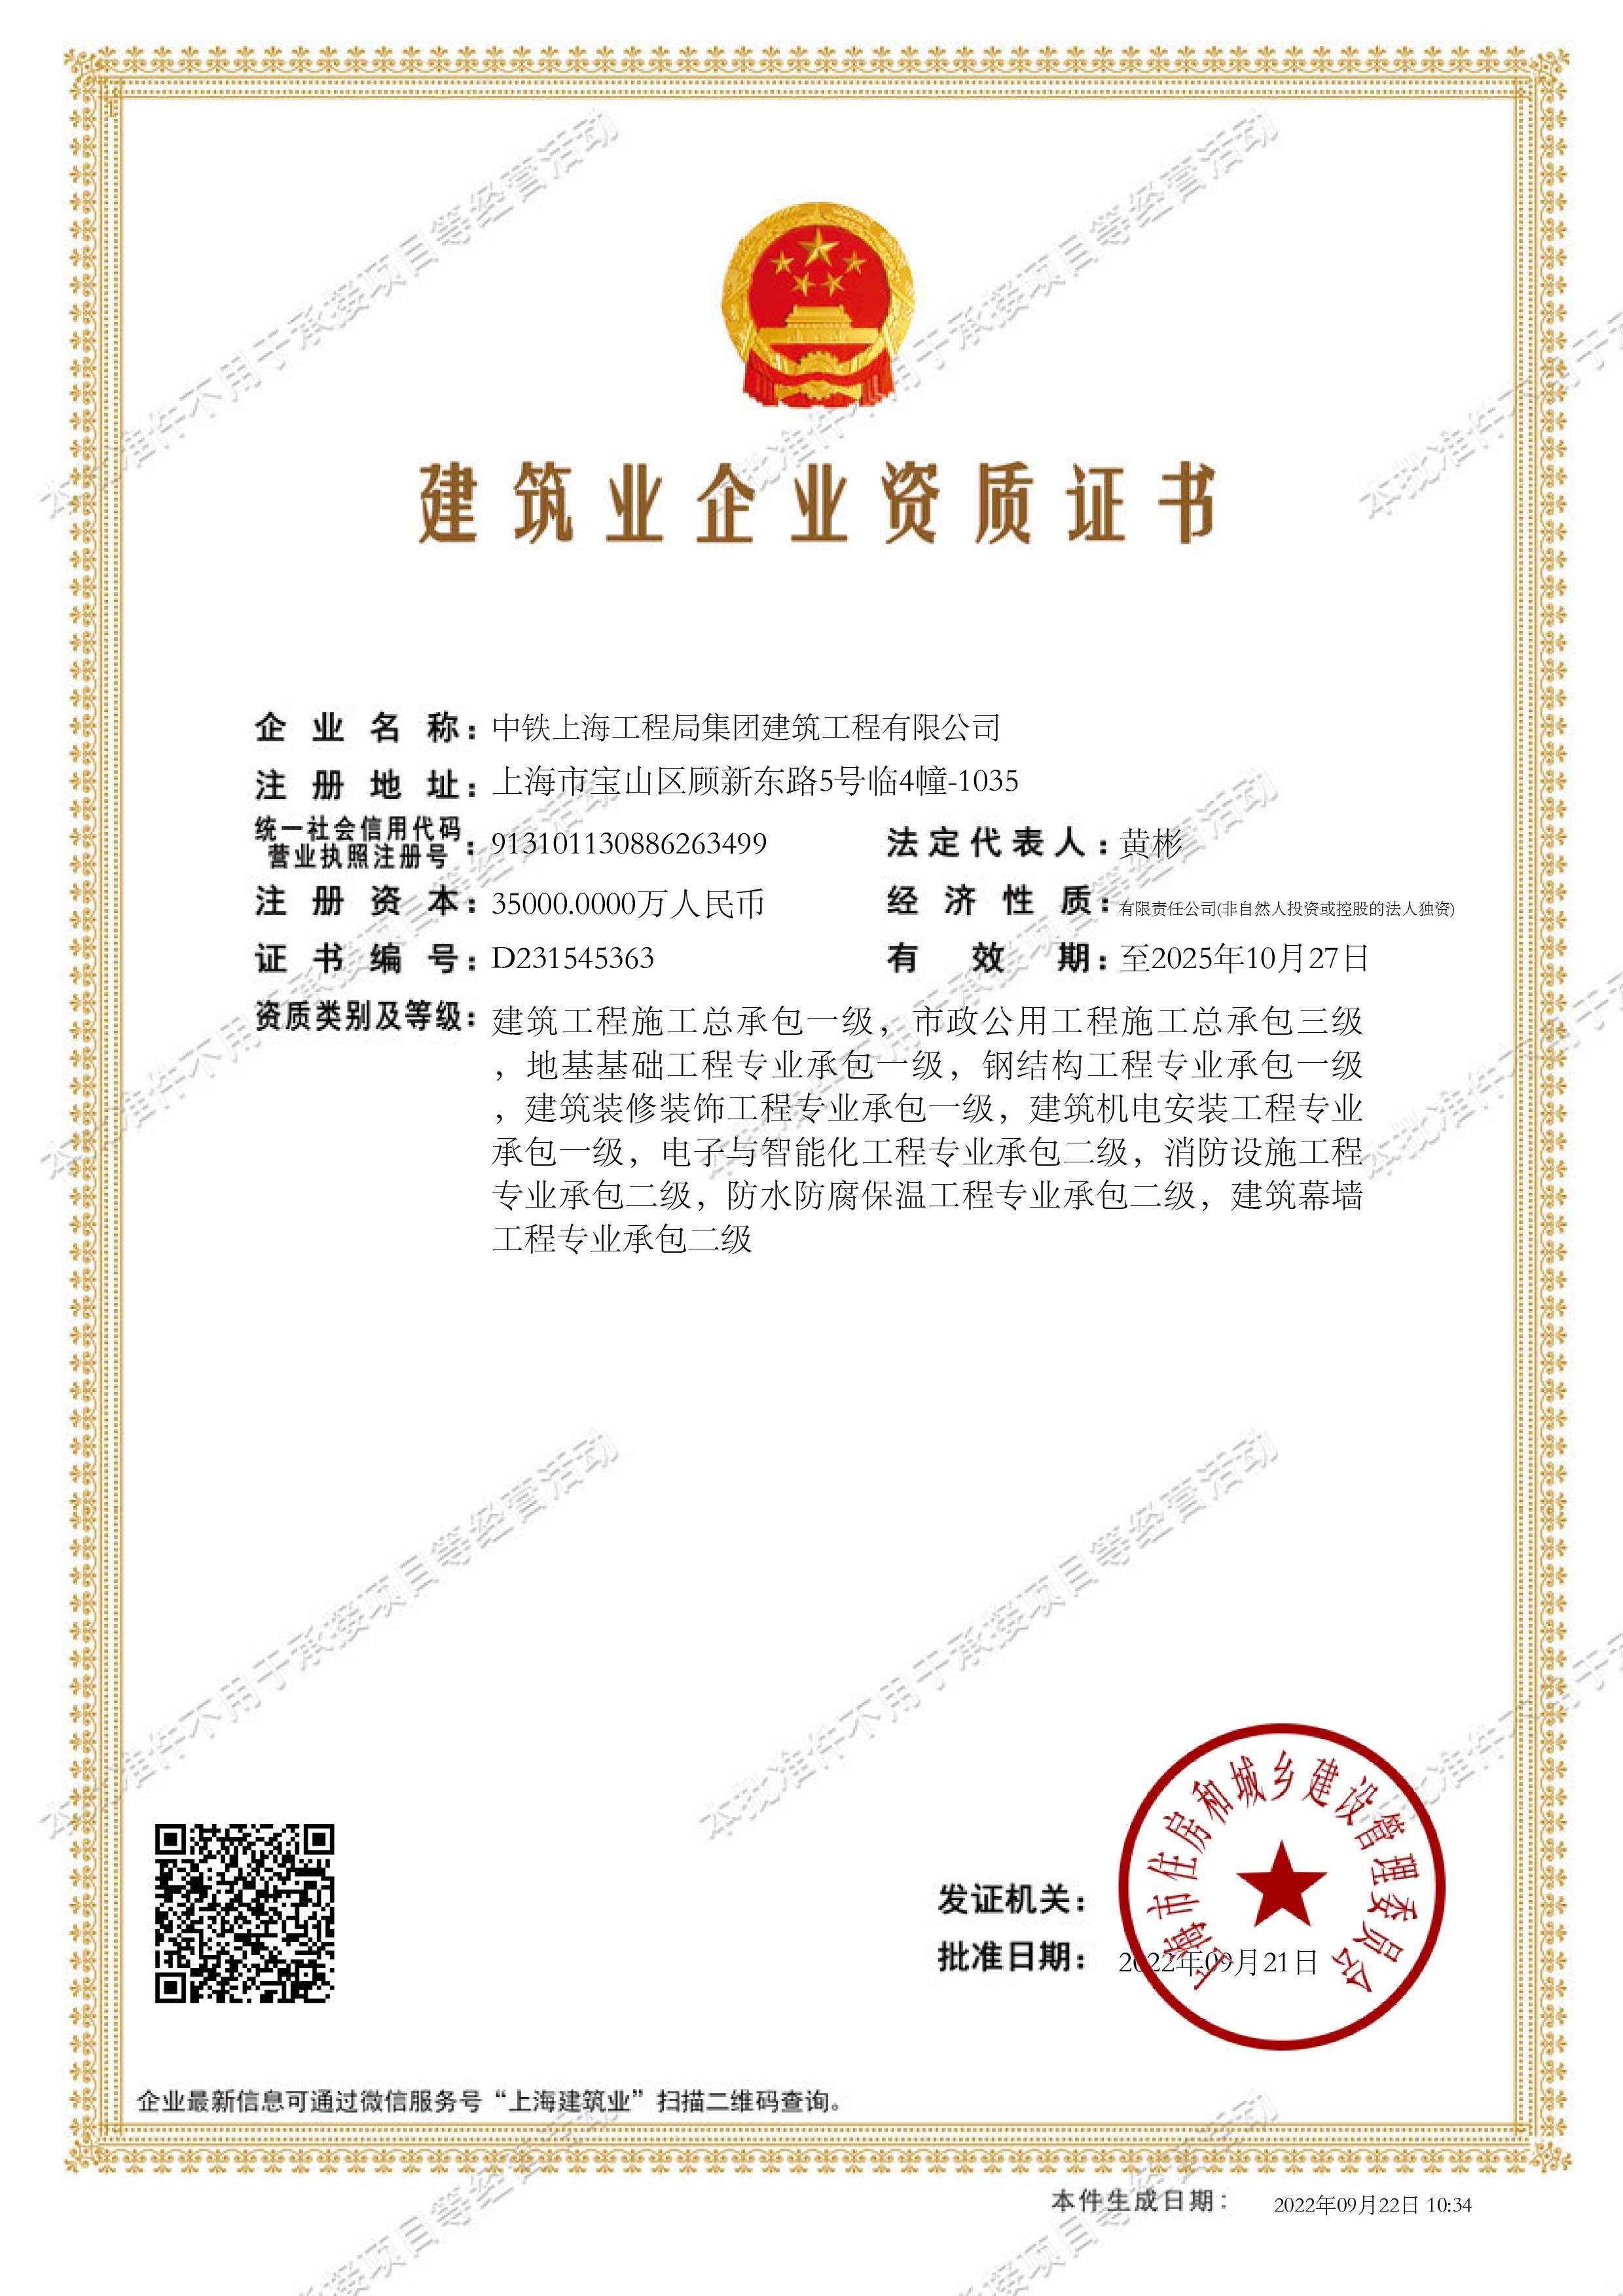 中铁上海工程局集团建筑工程有限公司建筑业企业资质证书-批准件